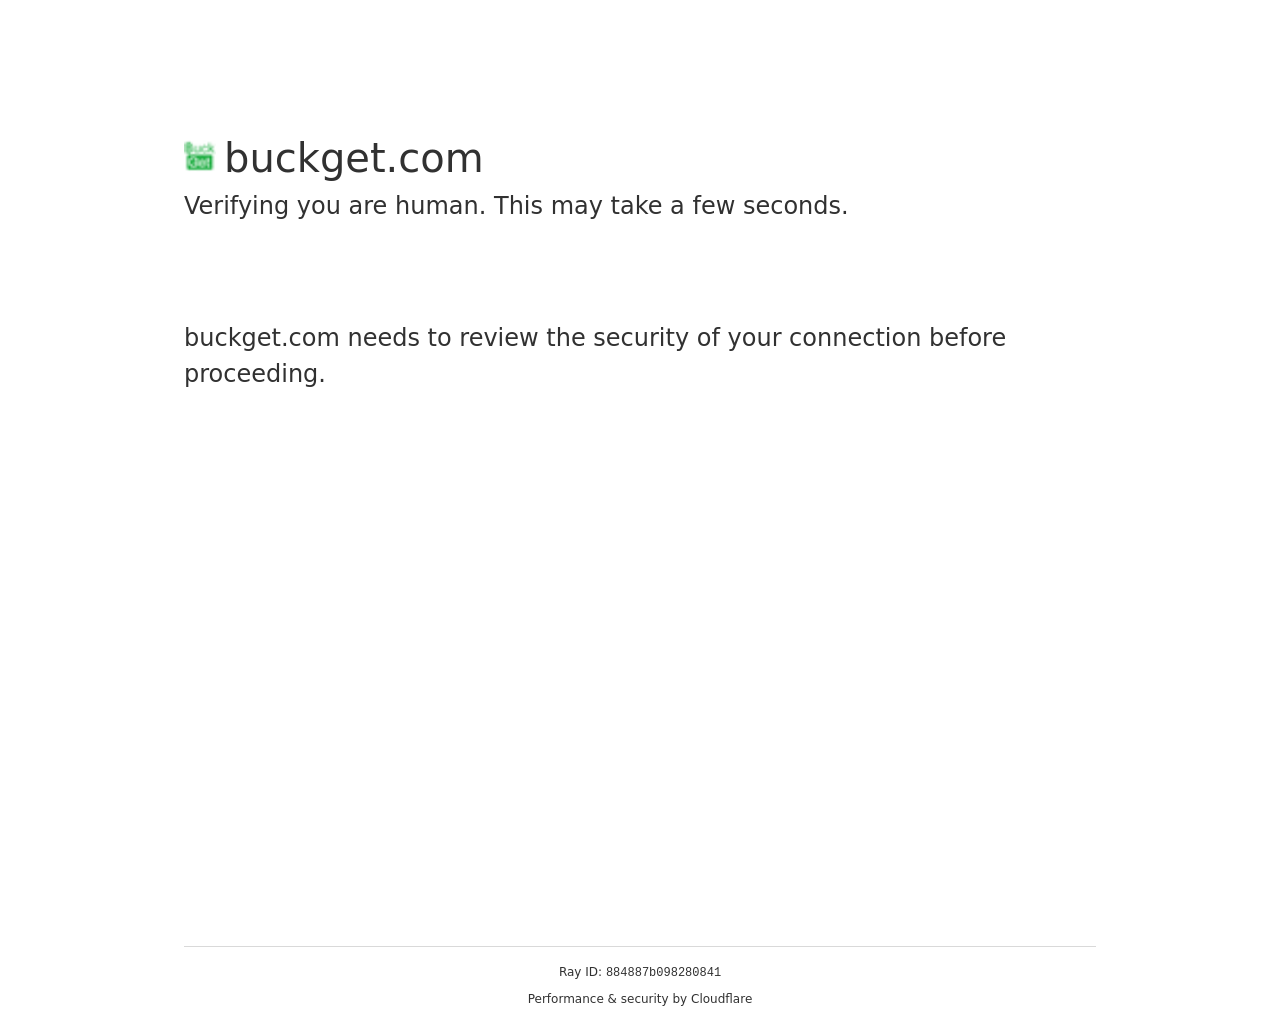 buckget.com